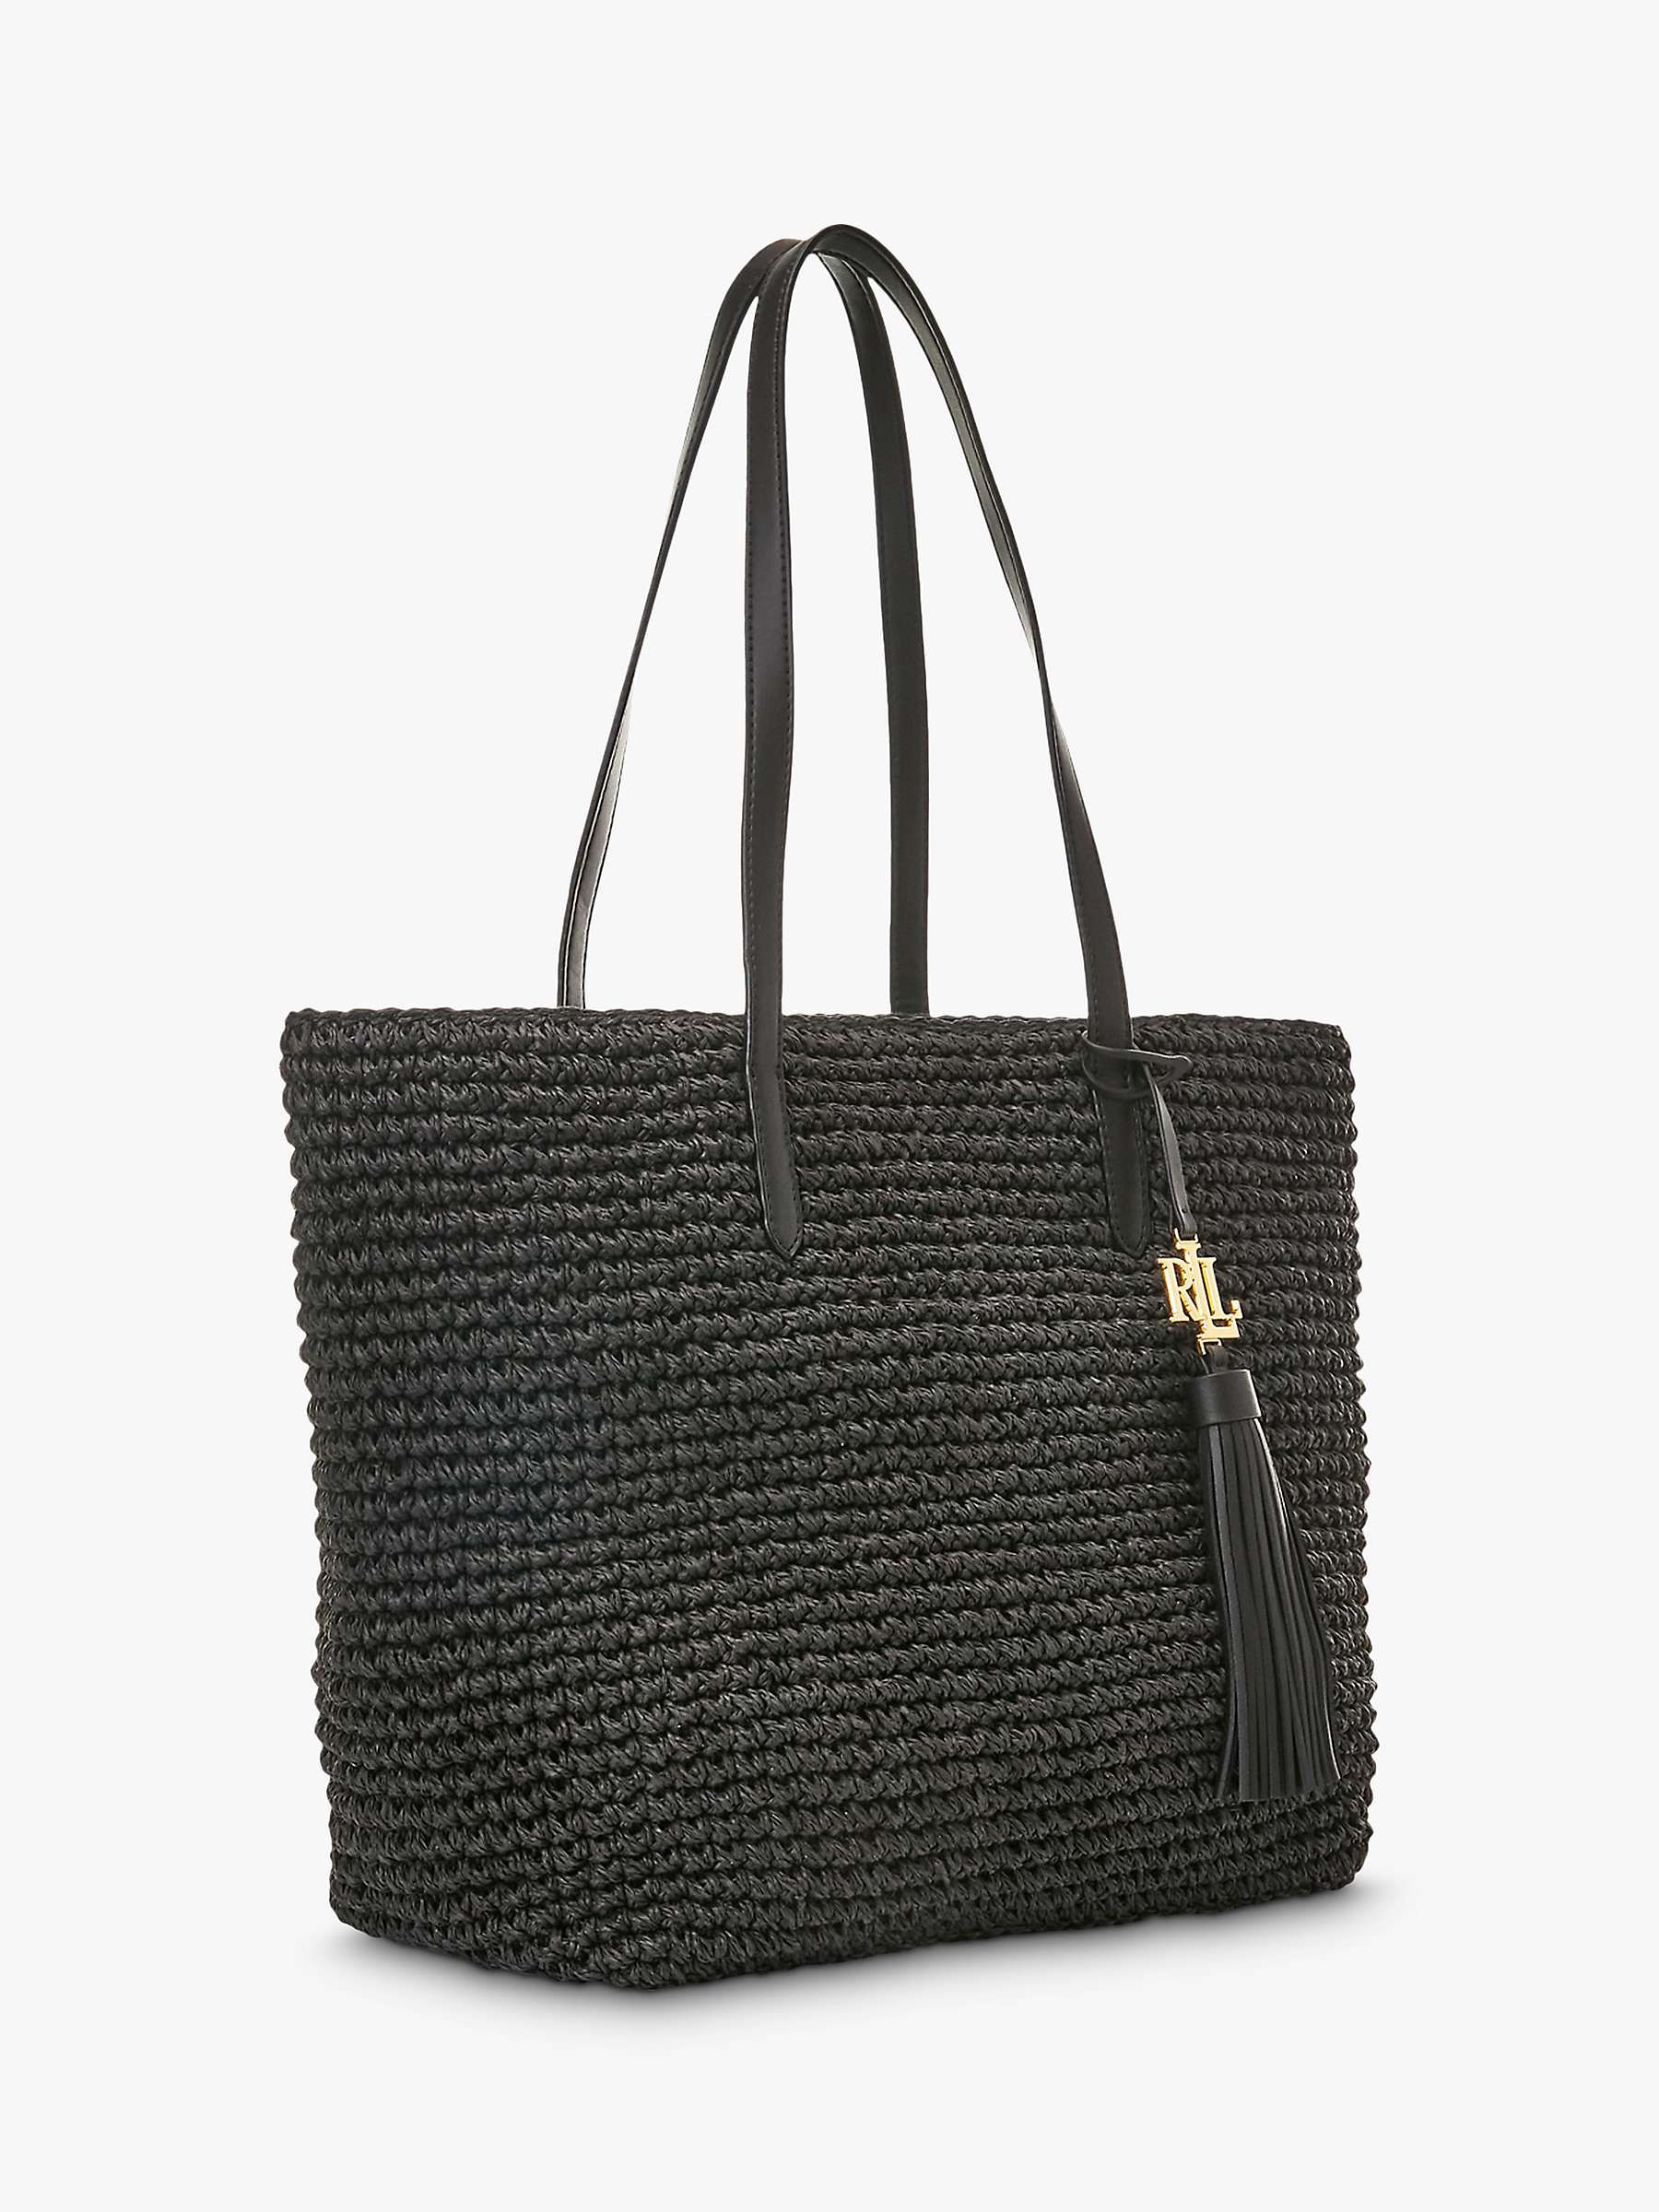 Buy Lauren Ralph Lauren Straw Tote Bag, Black Online at johnlewis.com